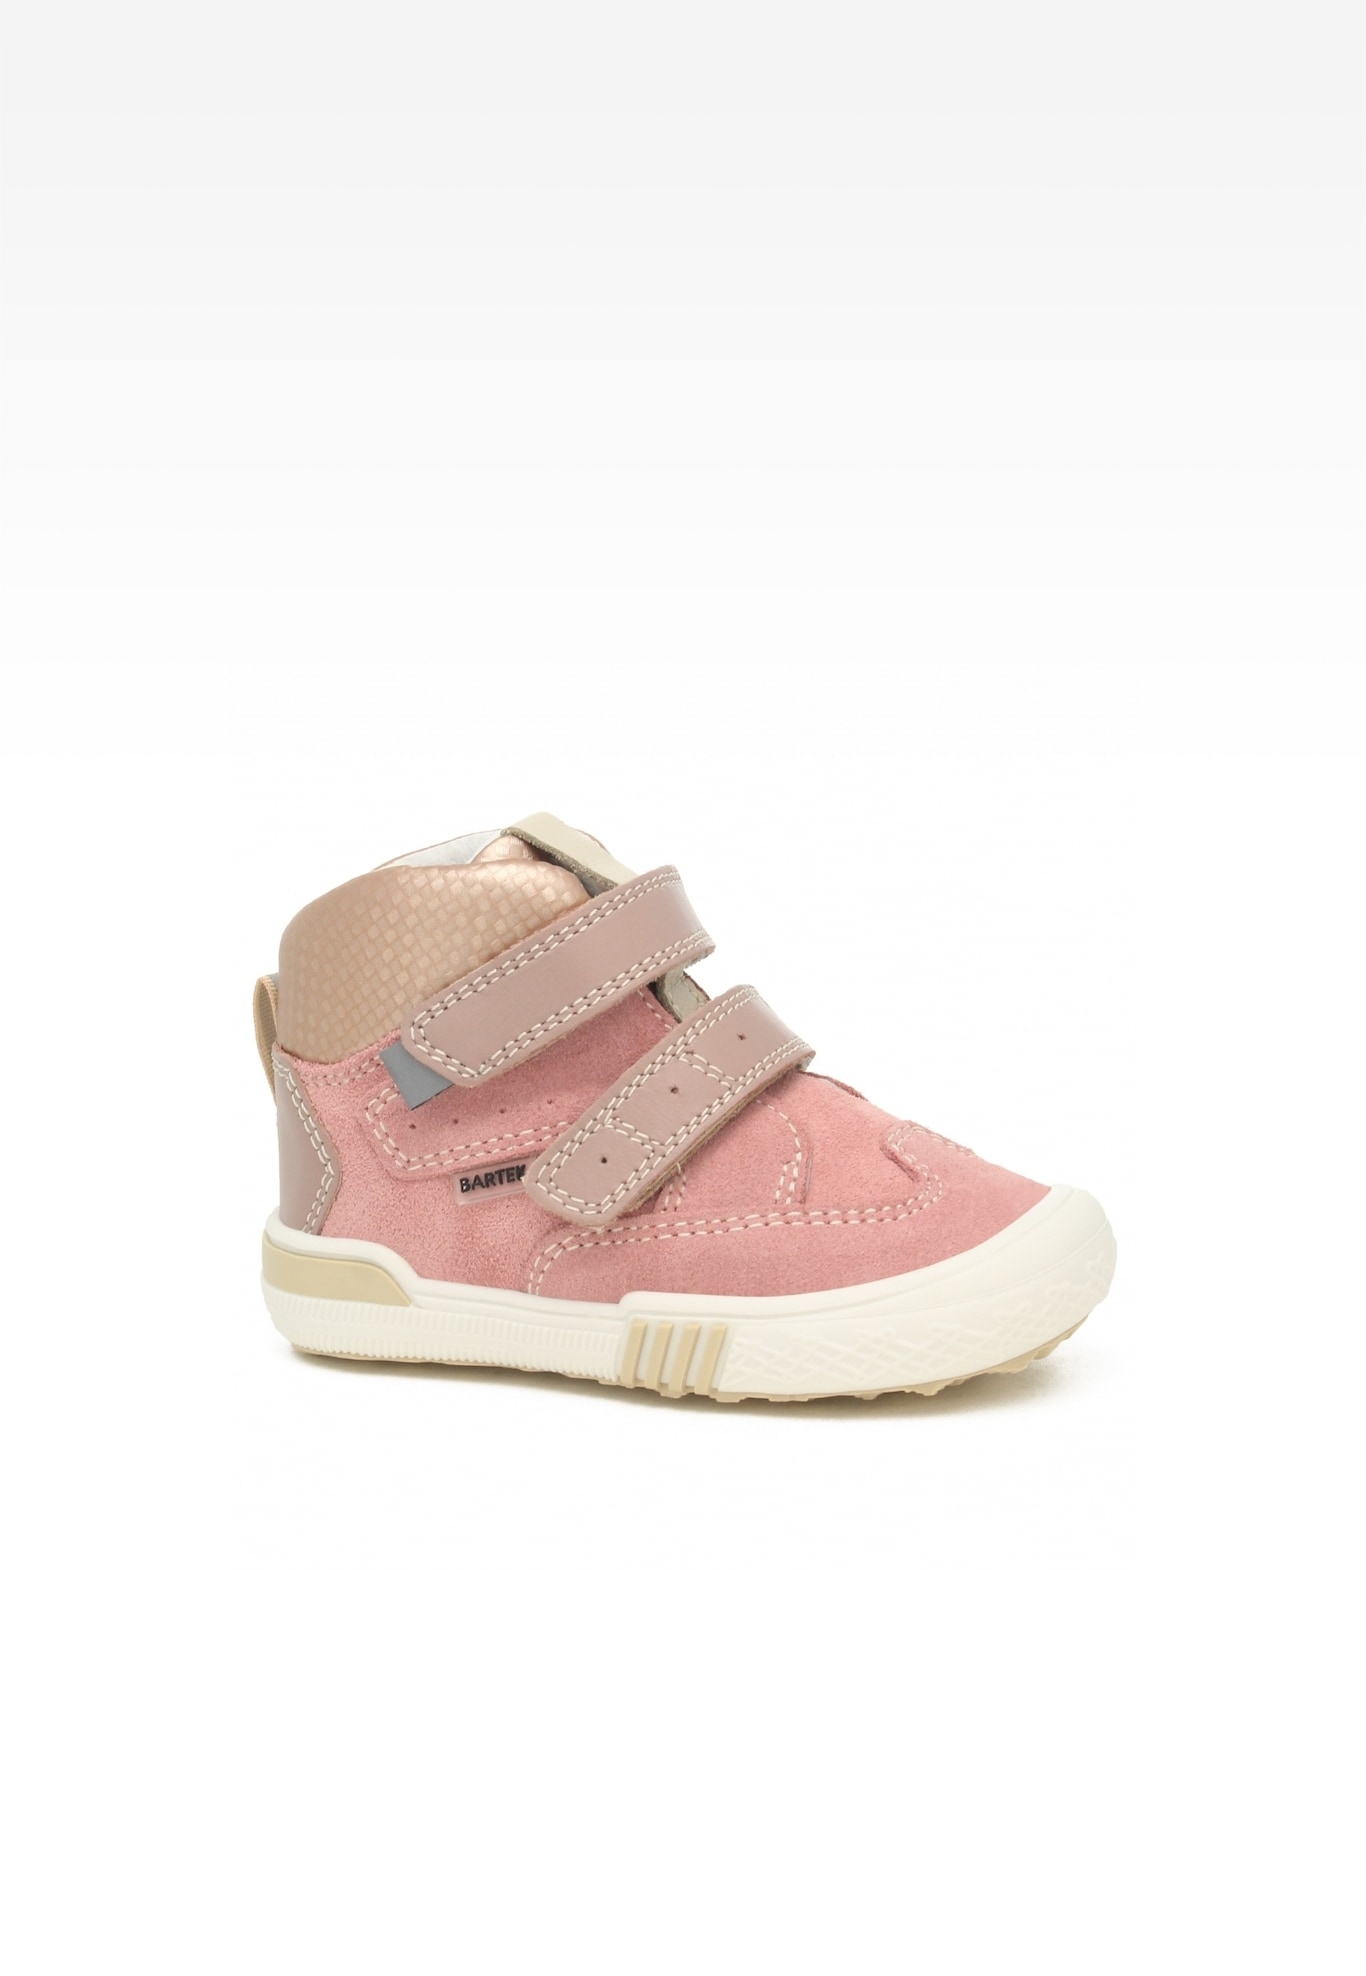 Sneakers BARTEK 021704-036 II, dla dziewcząt, różowy